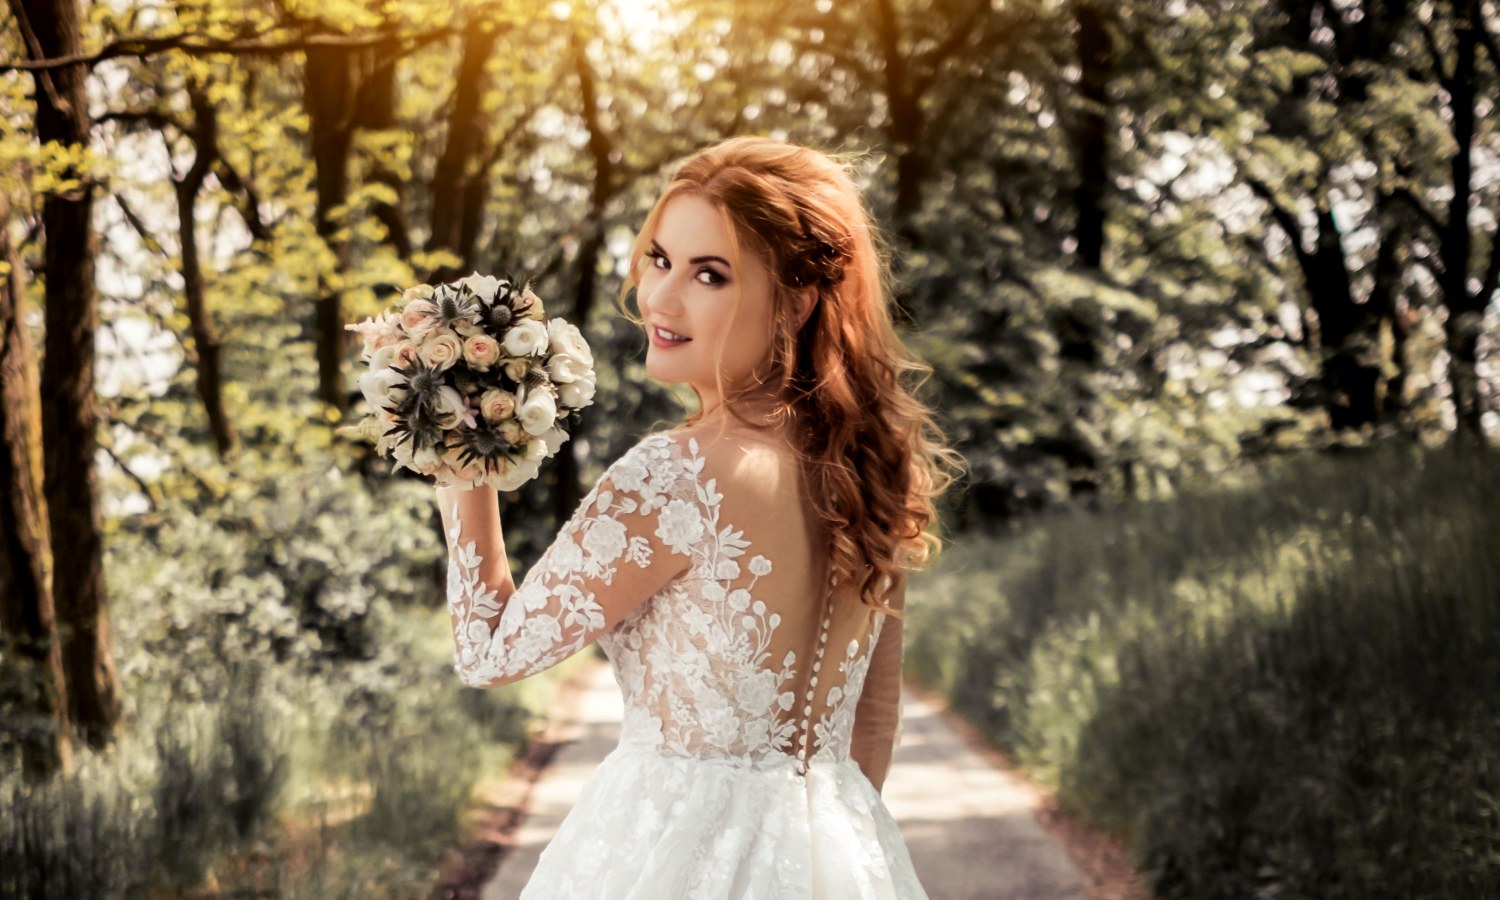 donna con abito da sposa romantico e bouquet in mano